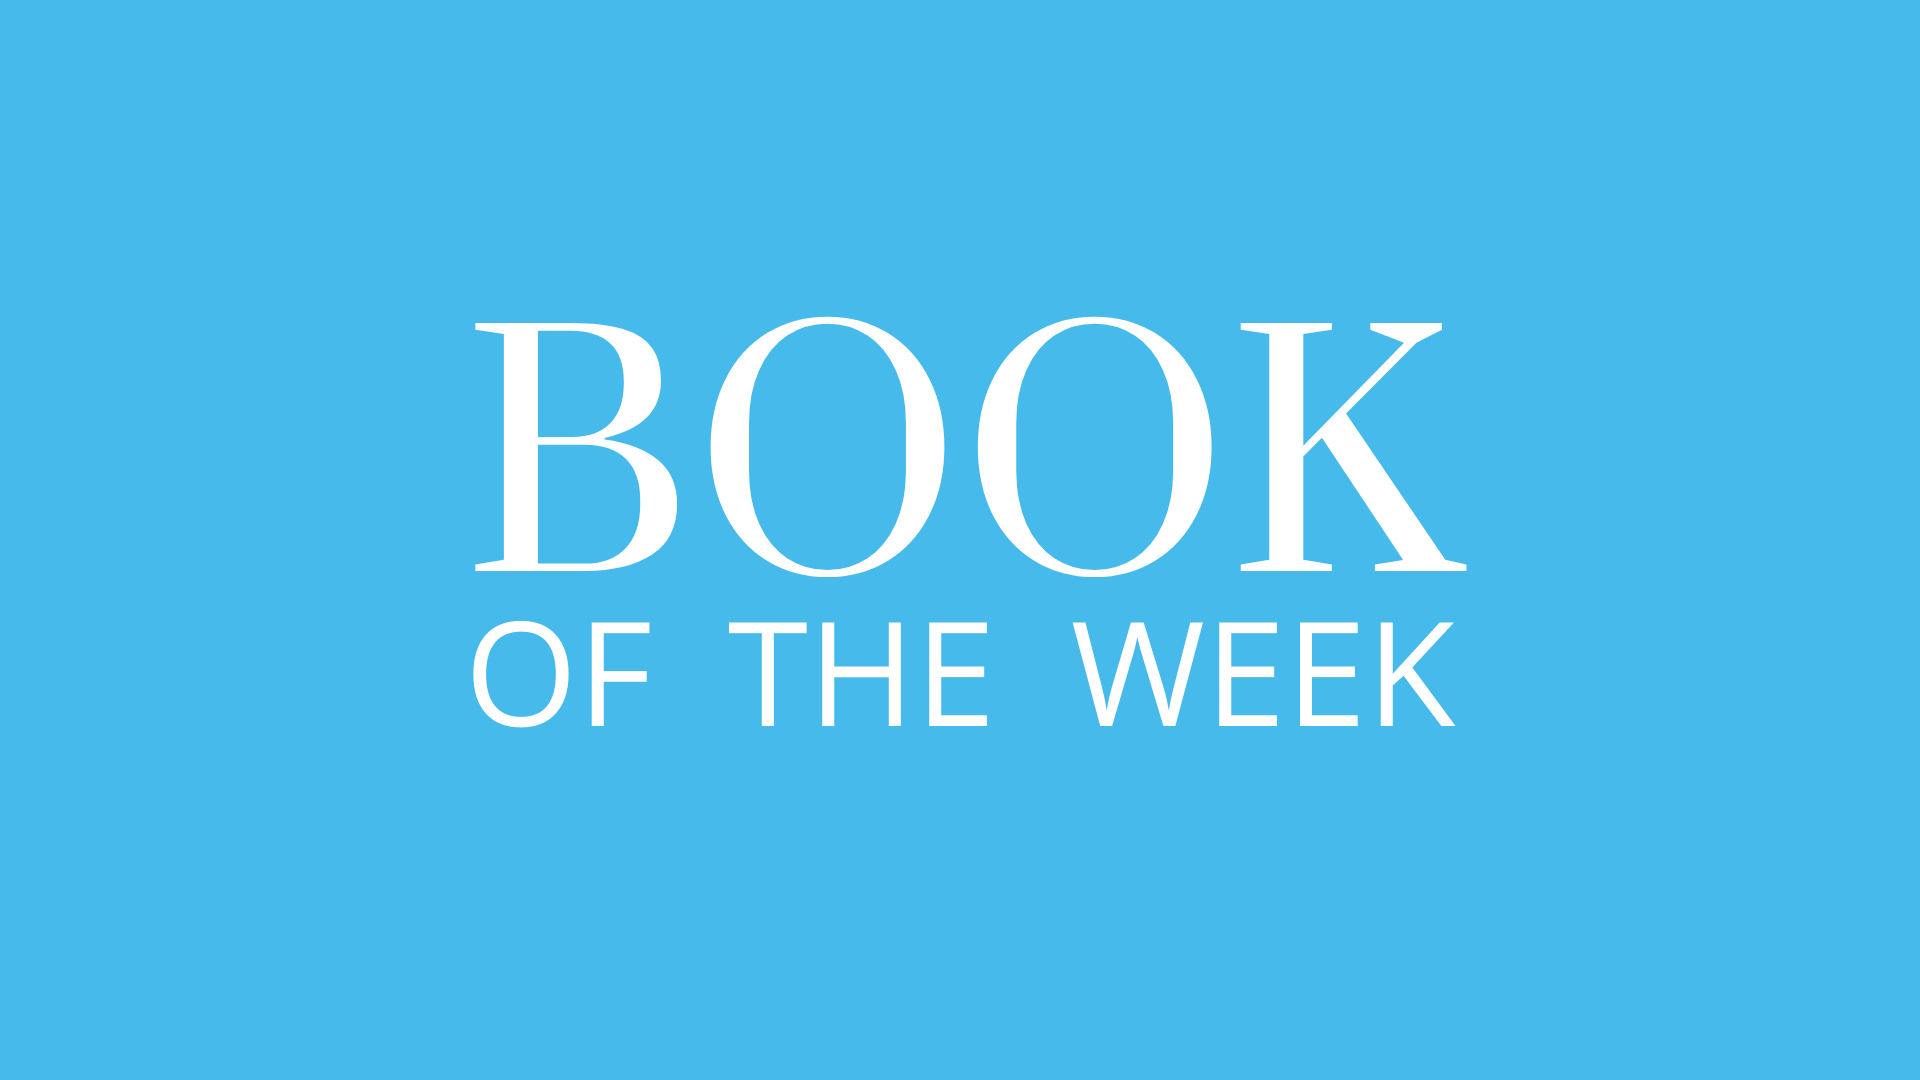 Book of the Week: Real Leadership